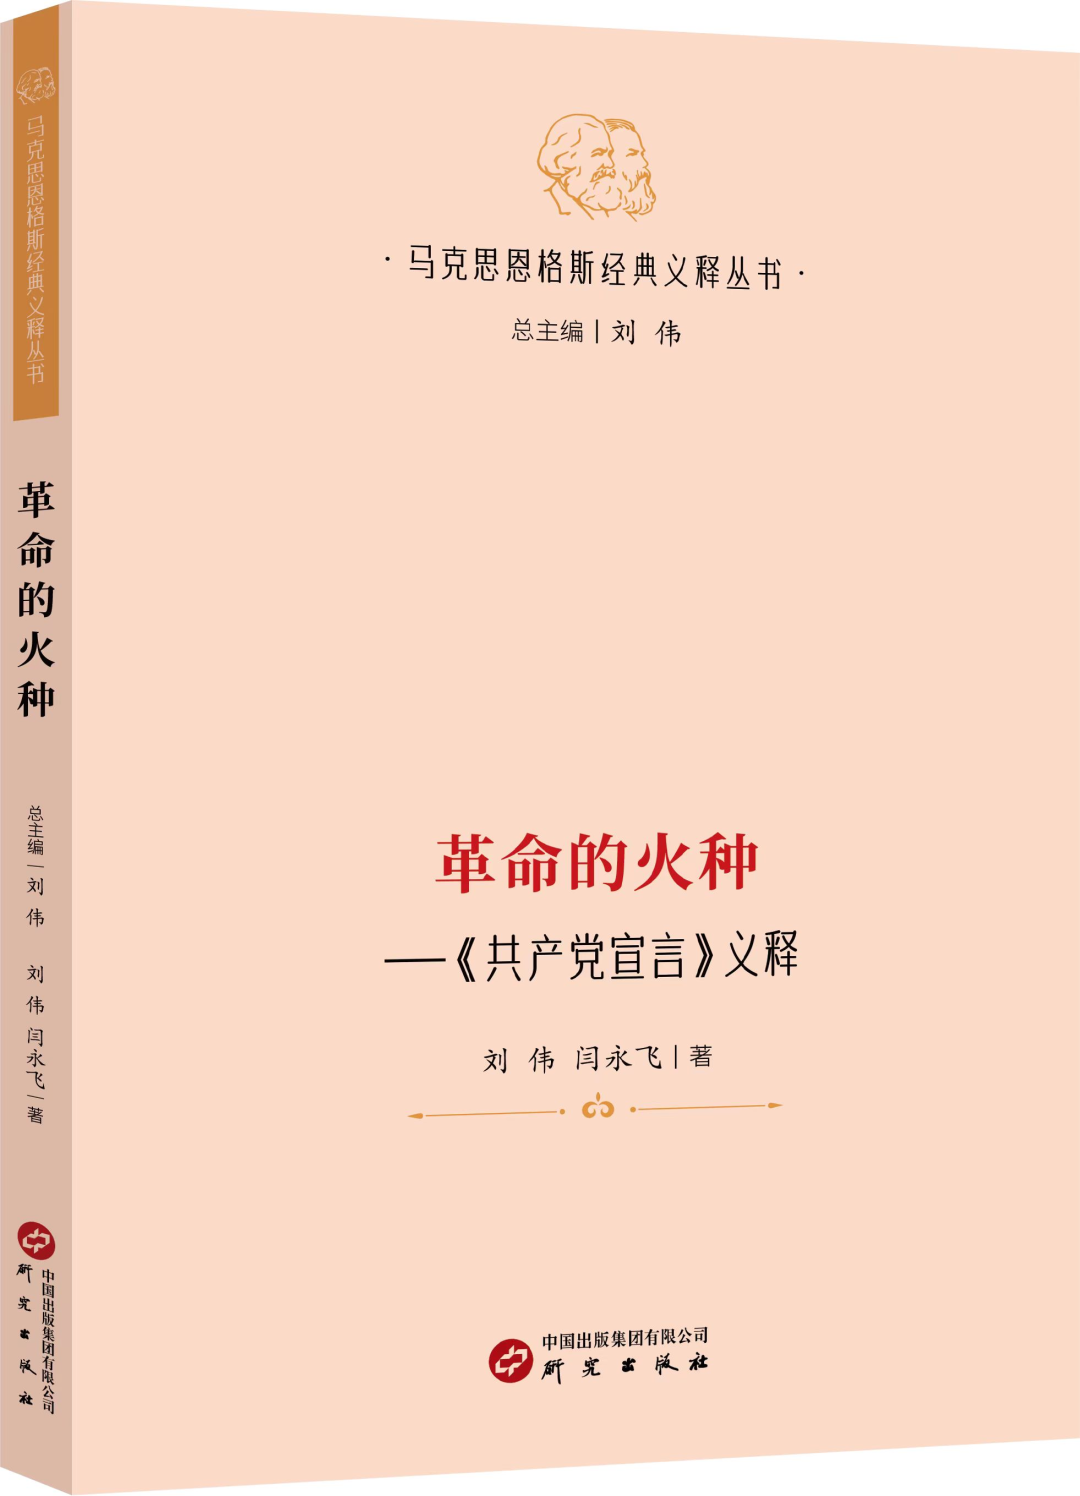 新书推荐 |《革命的火种 :〈共产党宣言〉义释》——先读“厚”，再读“薄”